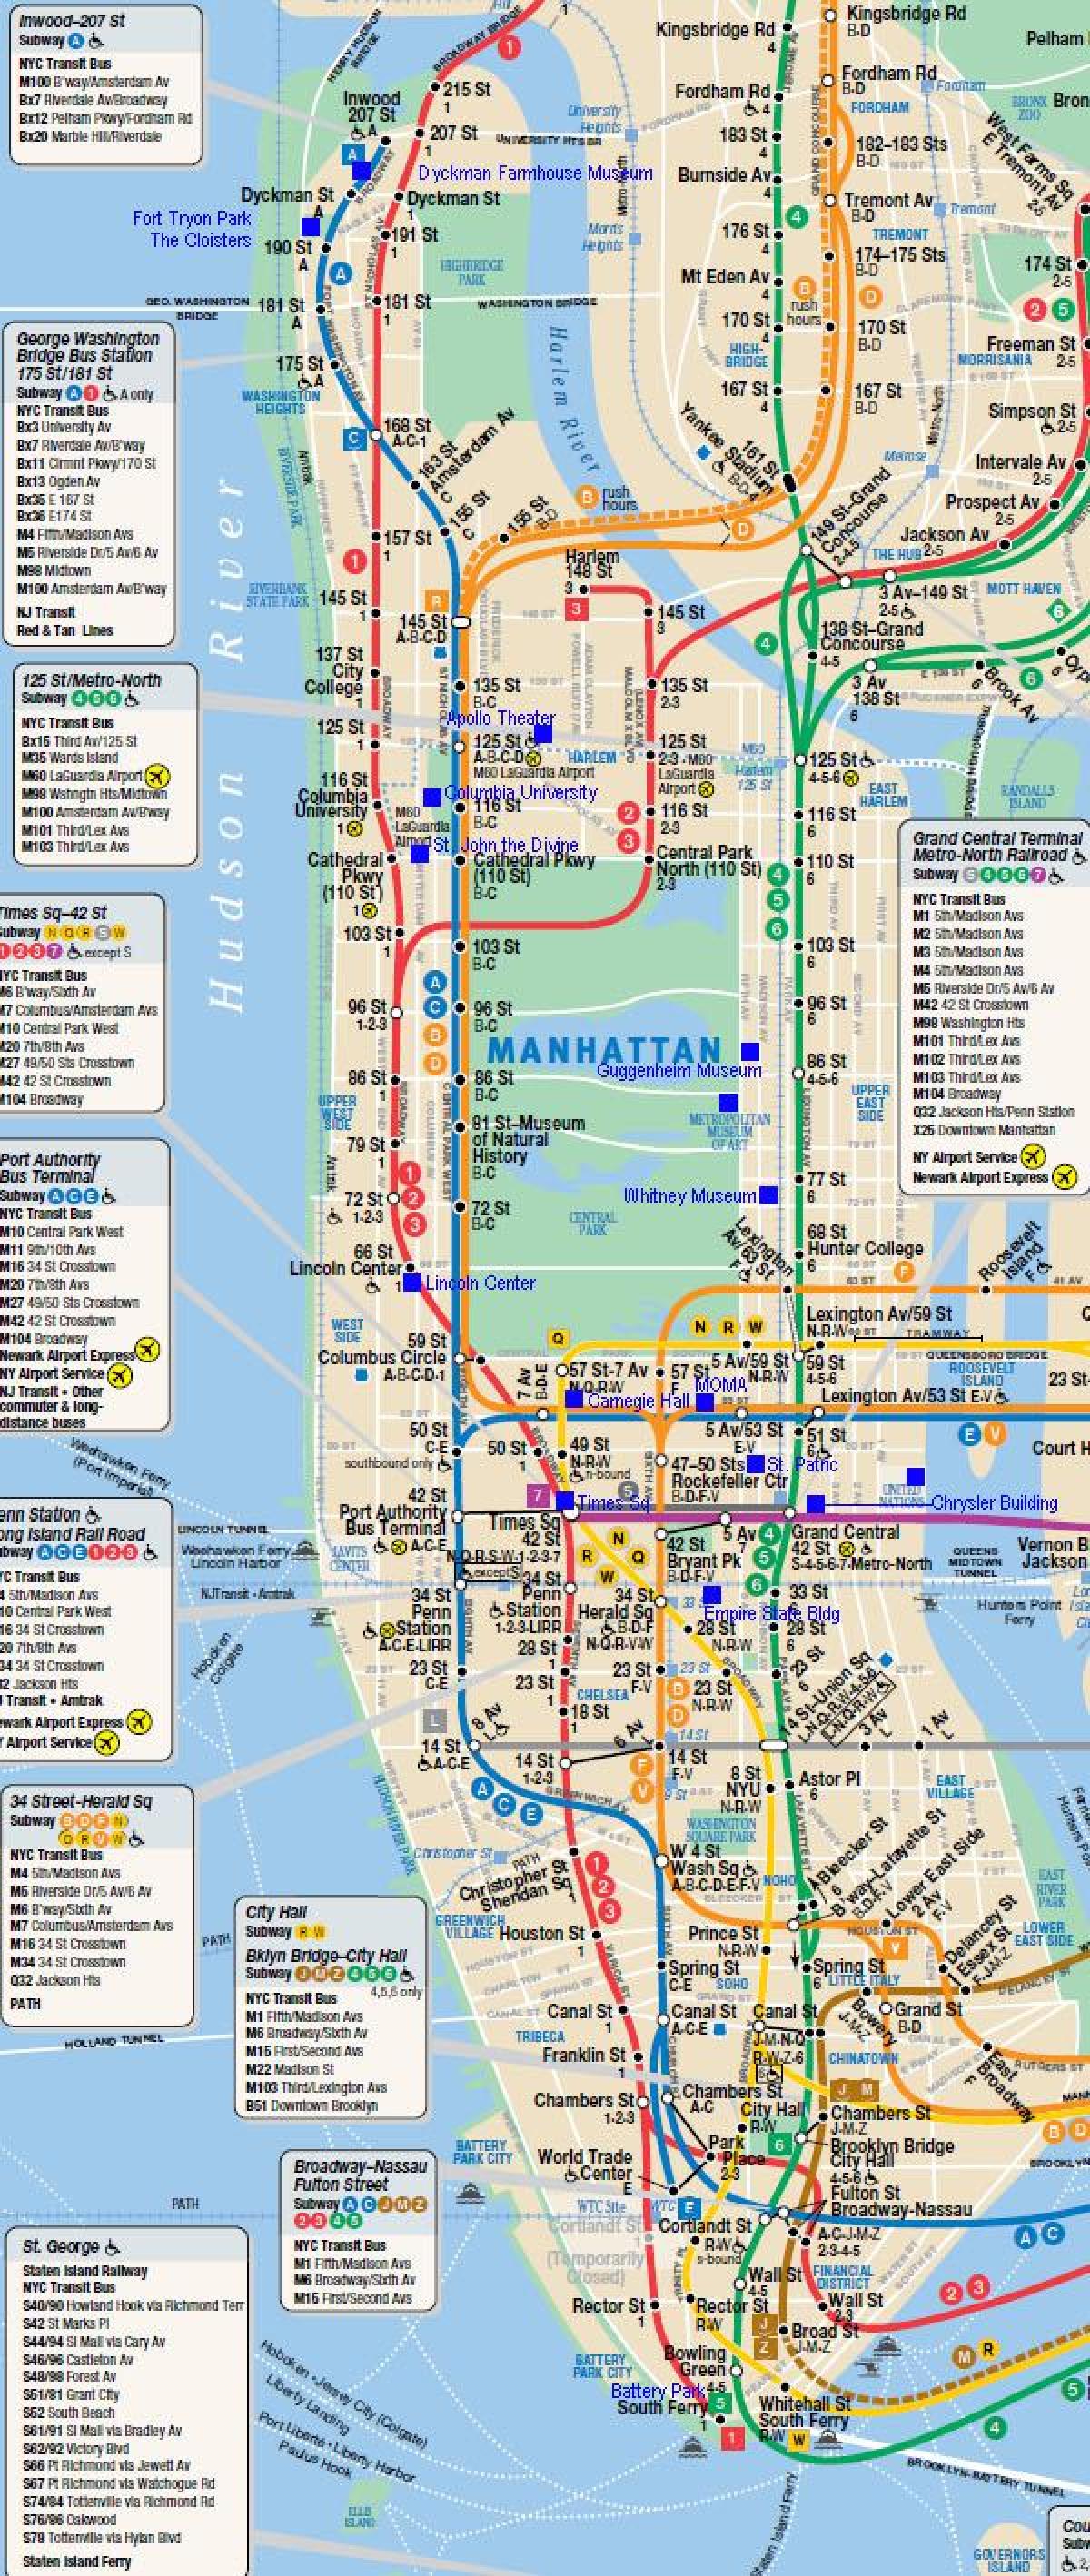 Manhattan ogradu mapu